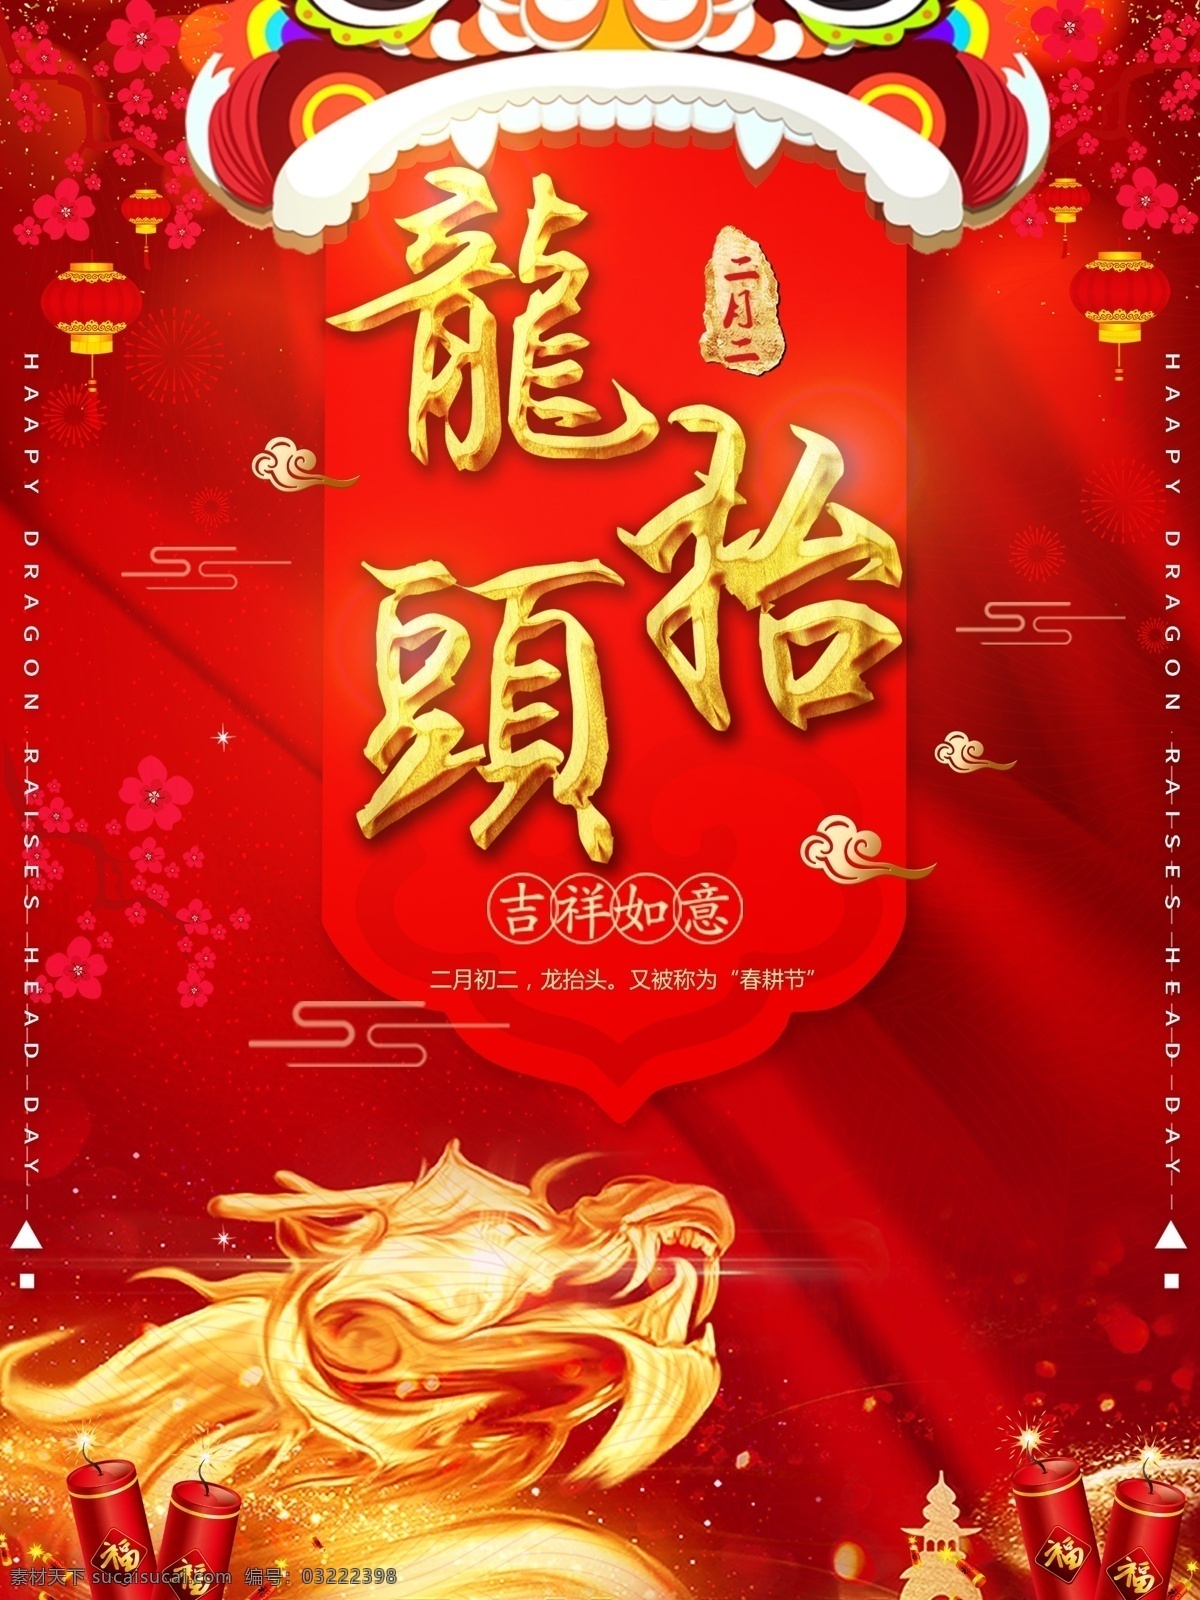 红色 喜庆 金色 二月 二龙 抬头 剪 龙头 宣传海报 宣传 灯笼 中国传统节日 二月二 龙抬头 剪龙头 海报 金色的龙